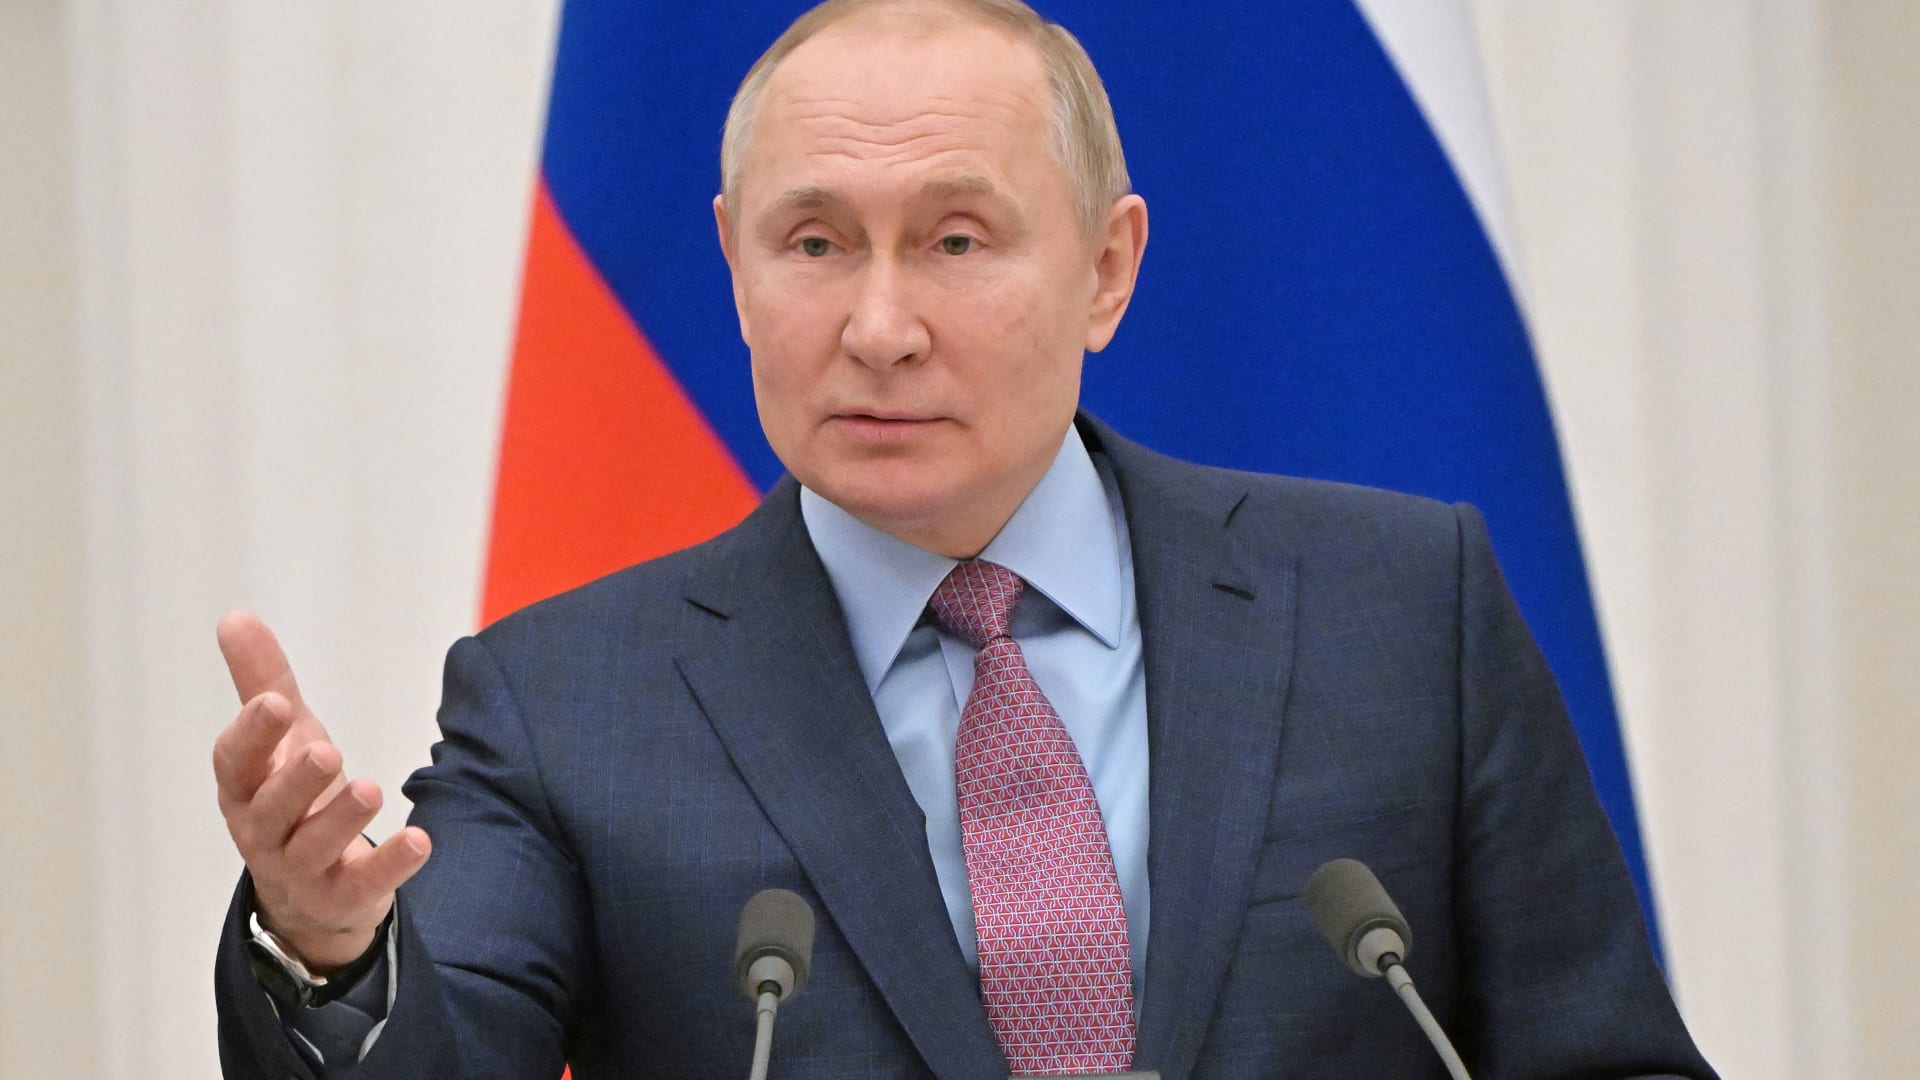 "خجول ومتحفظ".. كوندليزا رايس عن بوتين نائب رئيس البلدية الذي أصبح رئيسًا لروسيا